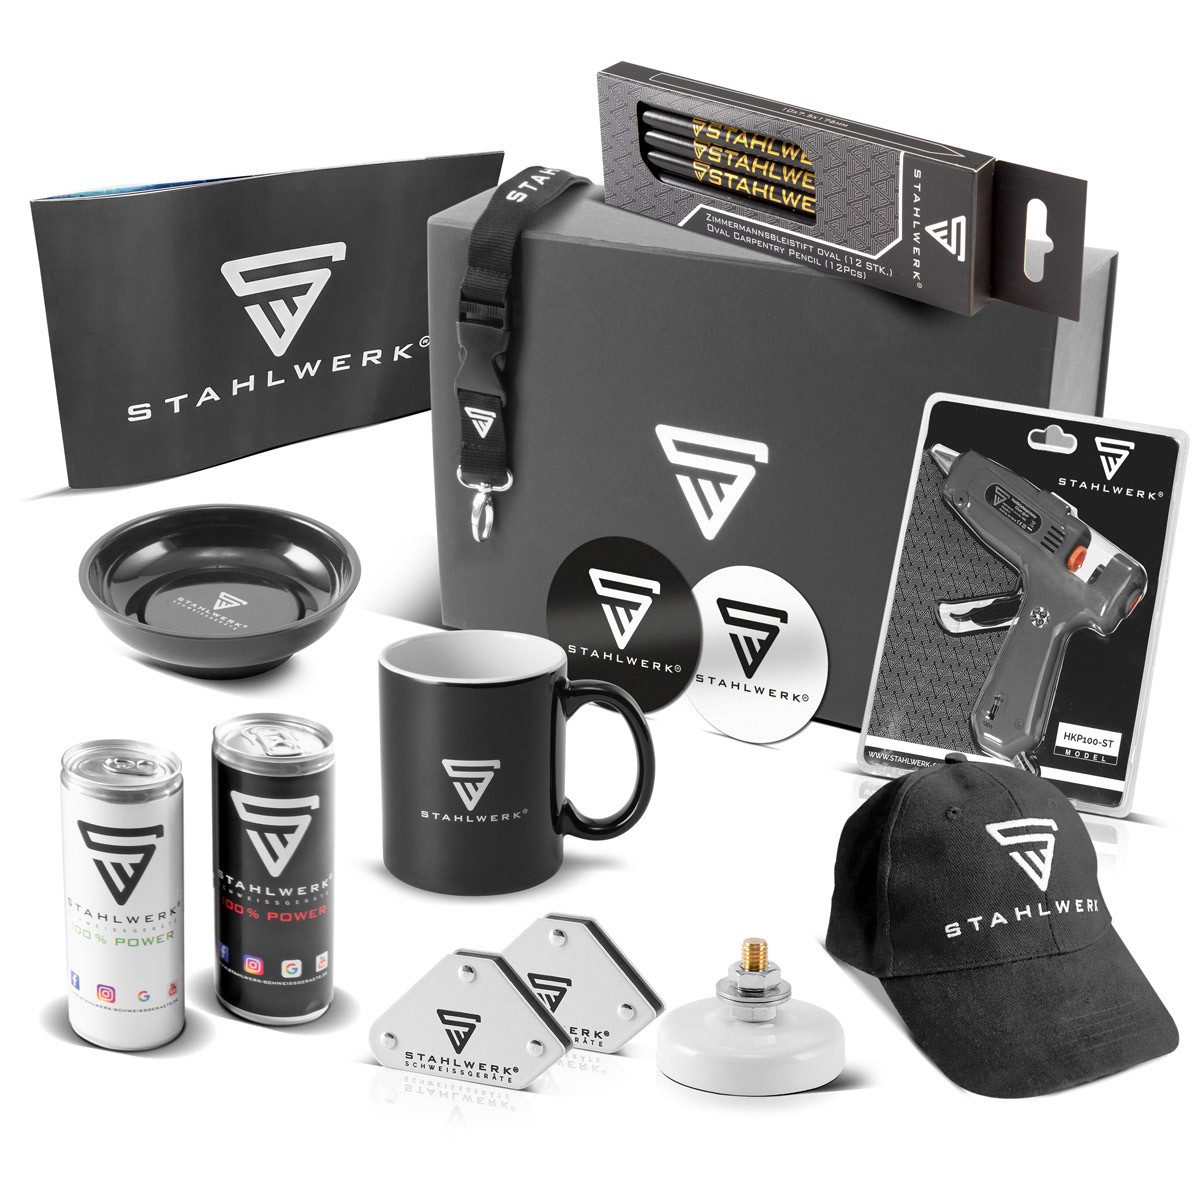 STAHLWERK Werkzeugset Merchandise Fan Paket, (Packung), Ideale Geschenkidee für alle STAHLWERK Fans - Umfangreiches Promopaket